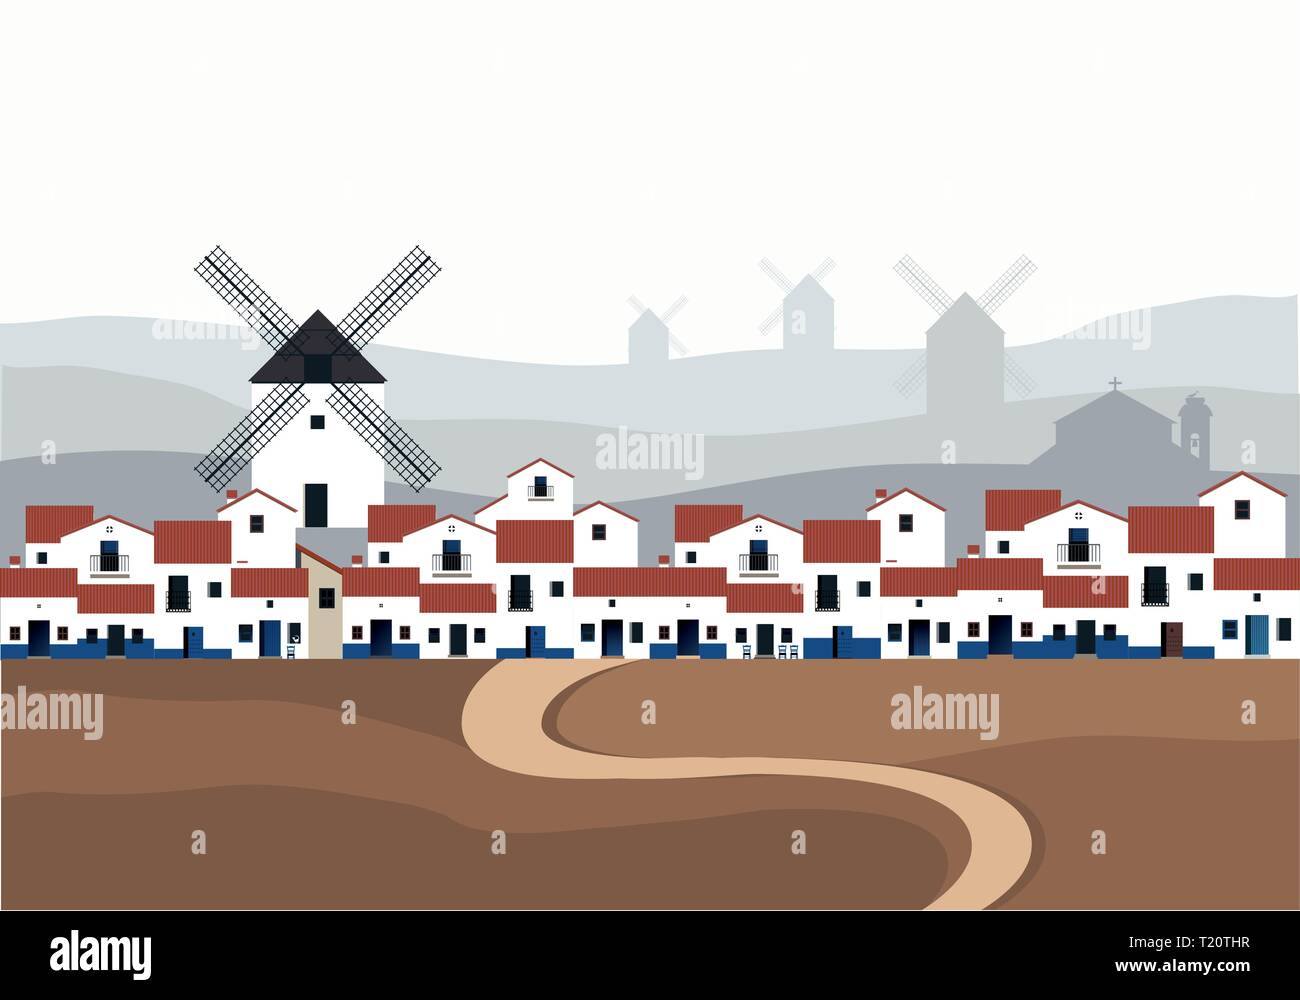 Typisch spanischen Dorfes (La Mancha) mit Windmühlen im Hintergrund Landschaft. Straße auf dem Boden im Vordergrund. Stock Vektor